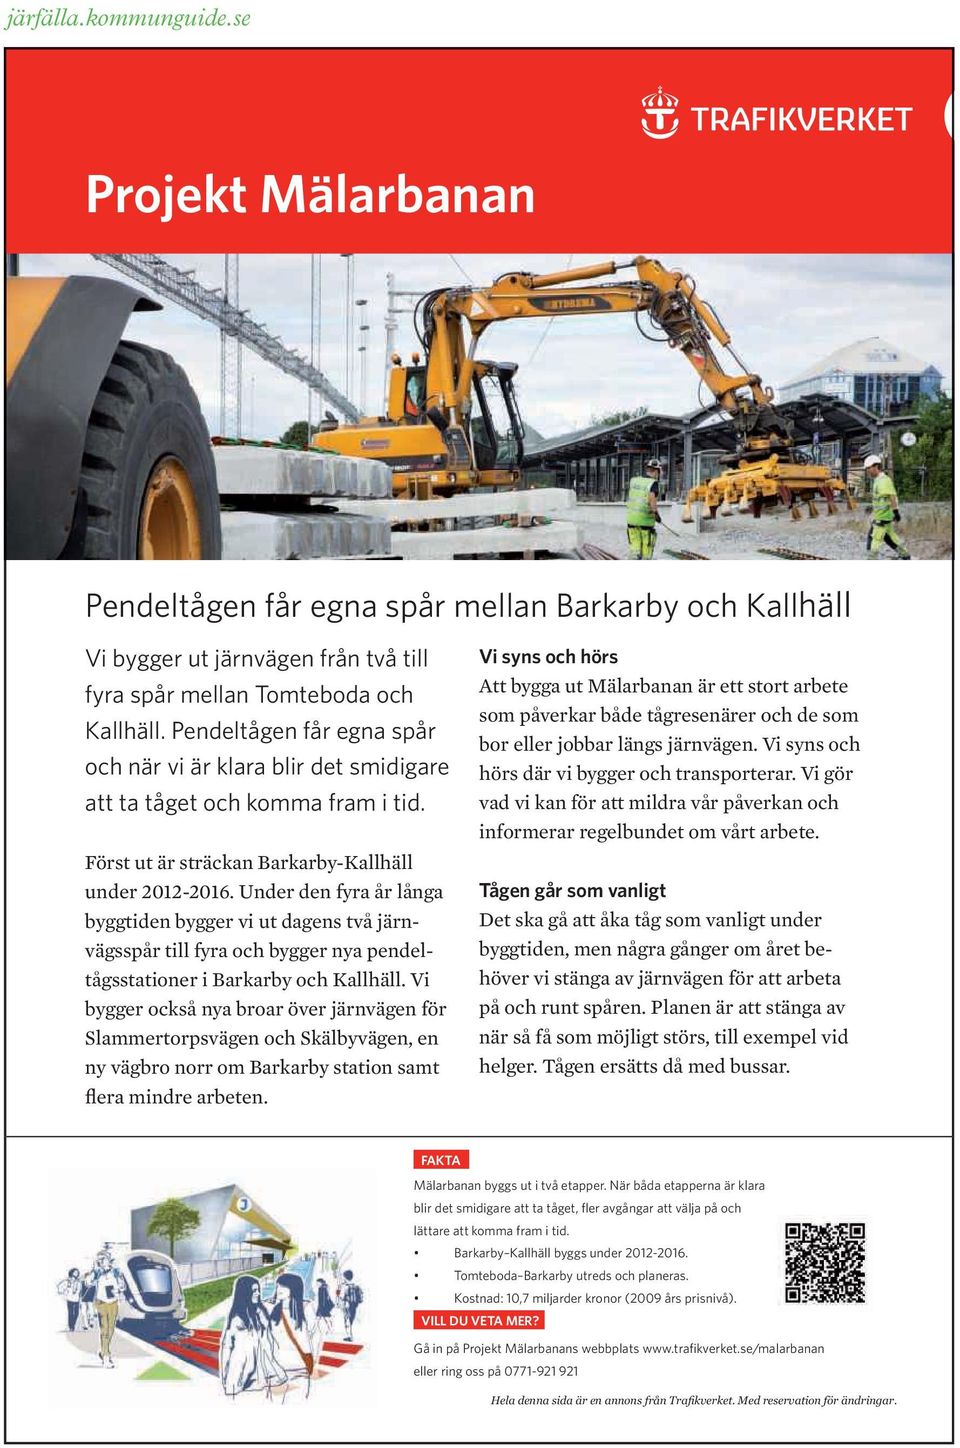 Under den fyra år långa byggtiden bygger vi ut dagens två järnvägsspår till fyra och bygger nya pendeltågsstationer i Barkarby och Kallhäll.